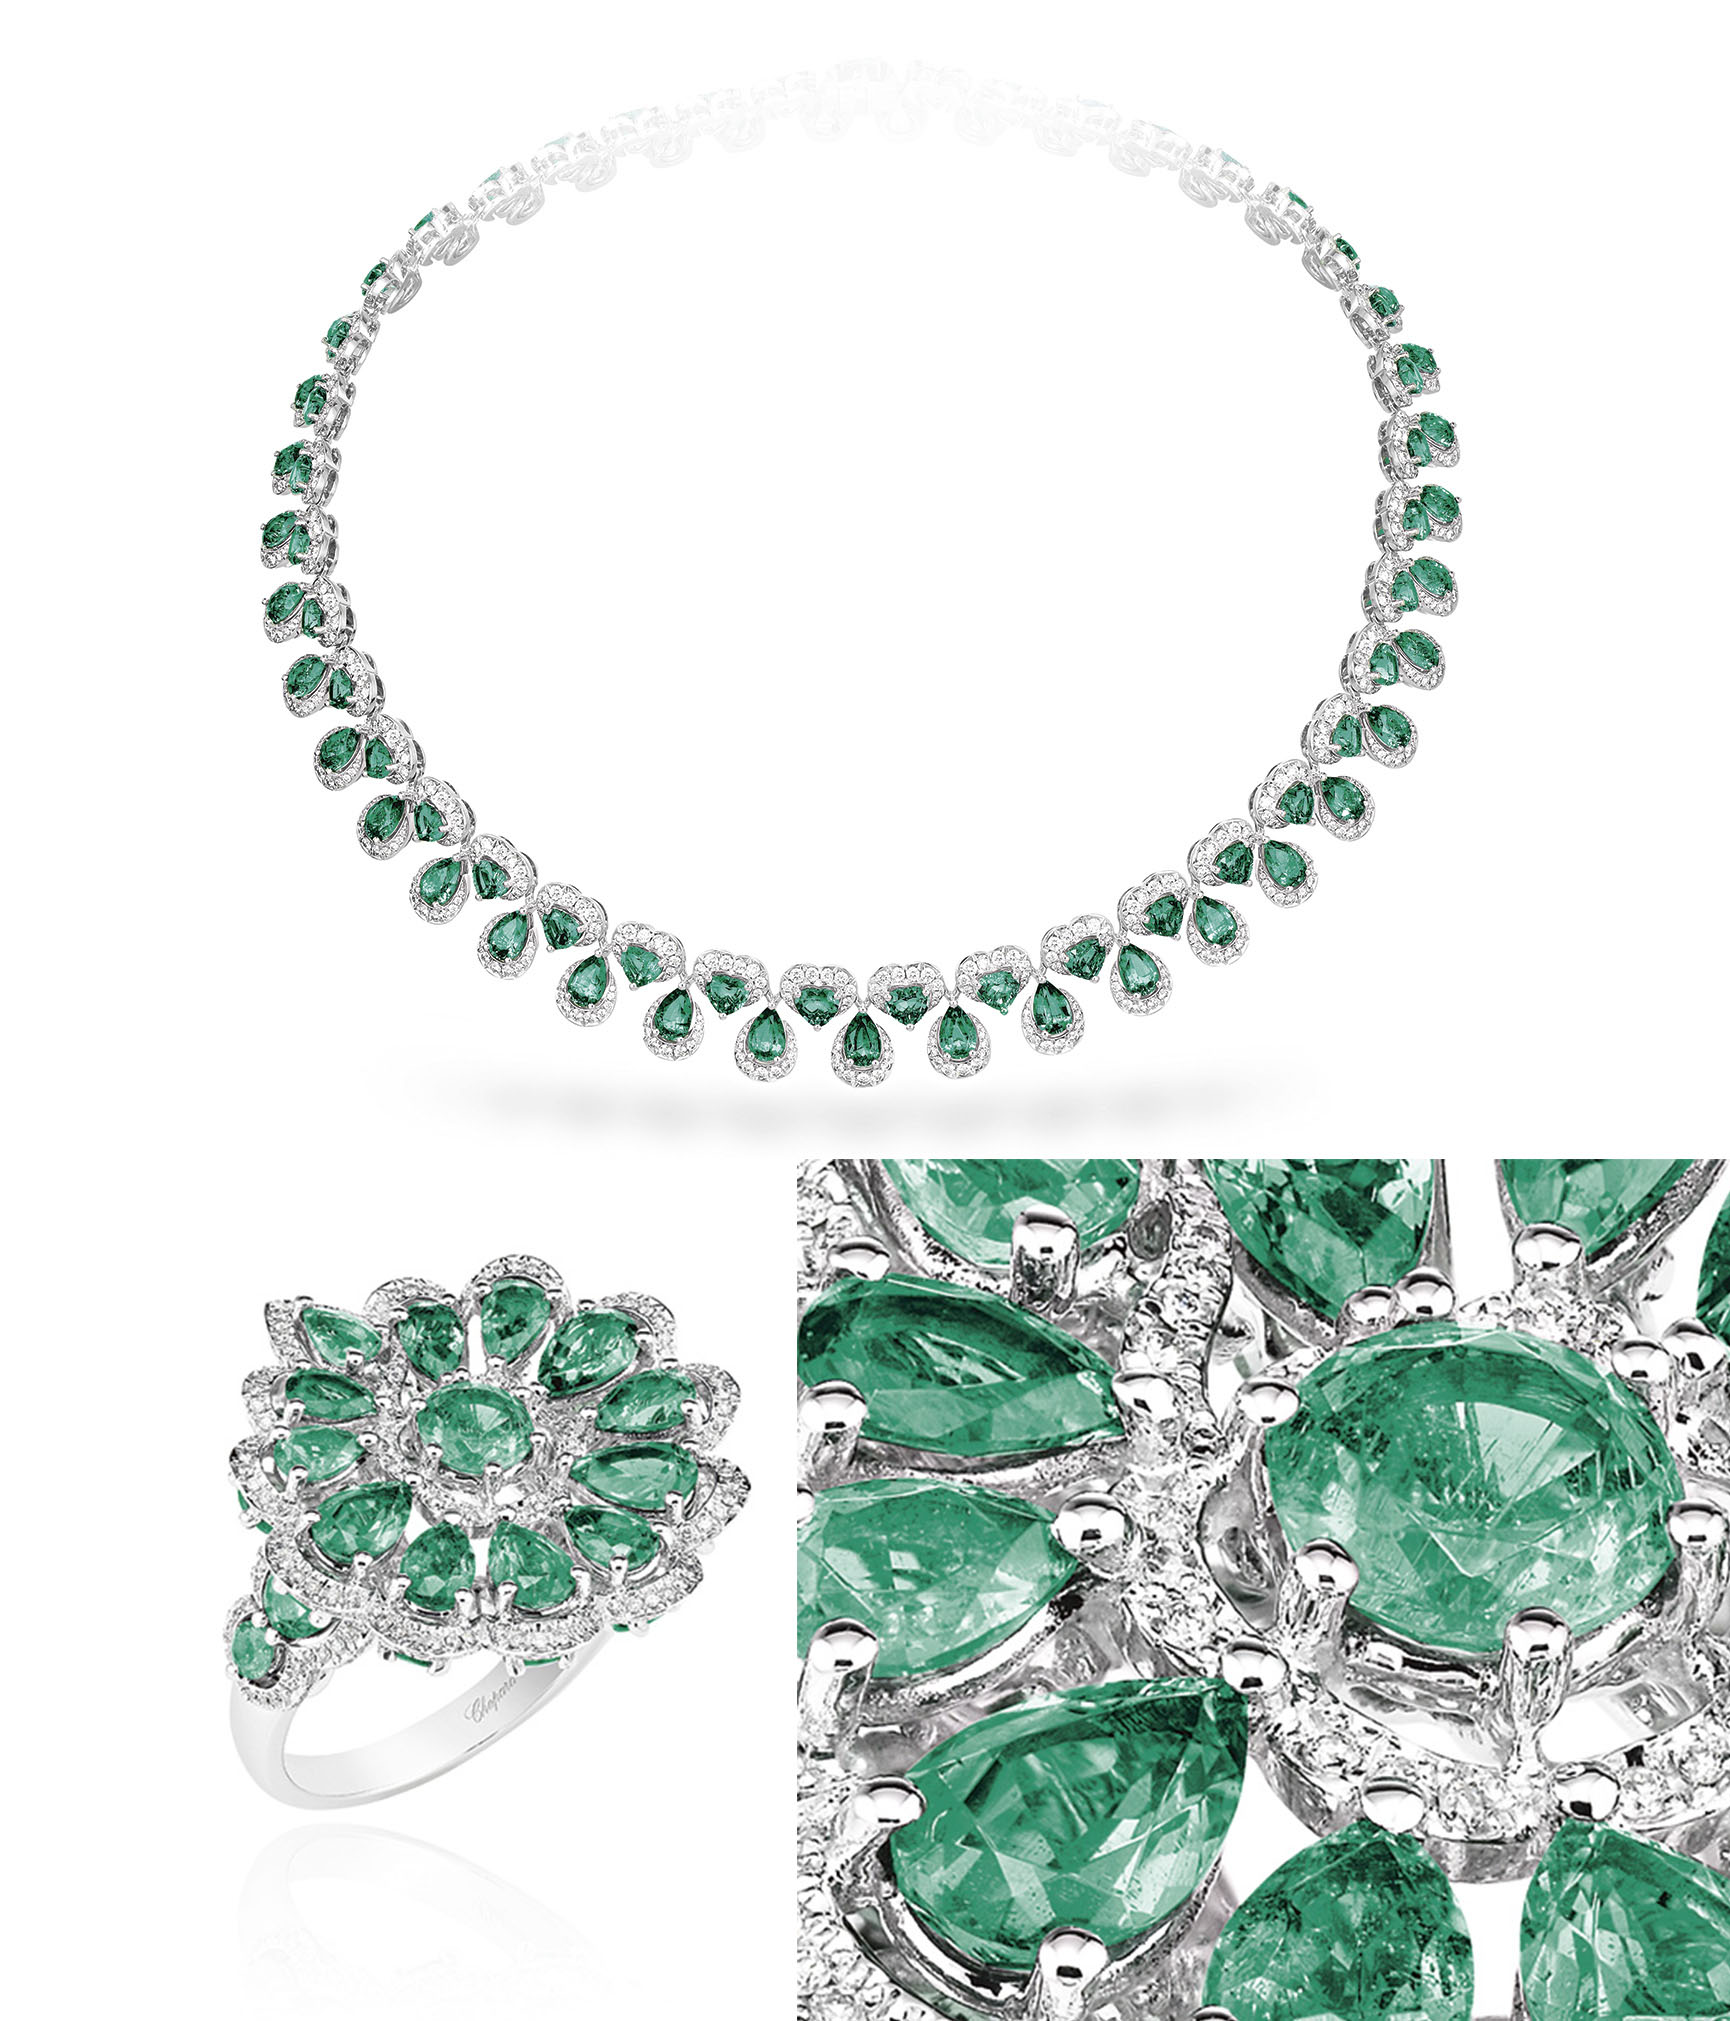 Bộ trang sức bao gồm chiếc nhẫn kim cương gồm chí tiết trang trí hình bông hoa và chiếc 'nhuỵ' là viên đá 18 carat màu xanh lục bảo. Đi cùng là đôi bông tai có thiết kế đồng bộ.